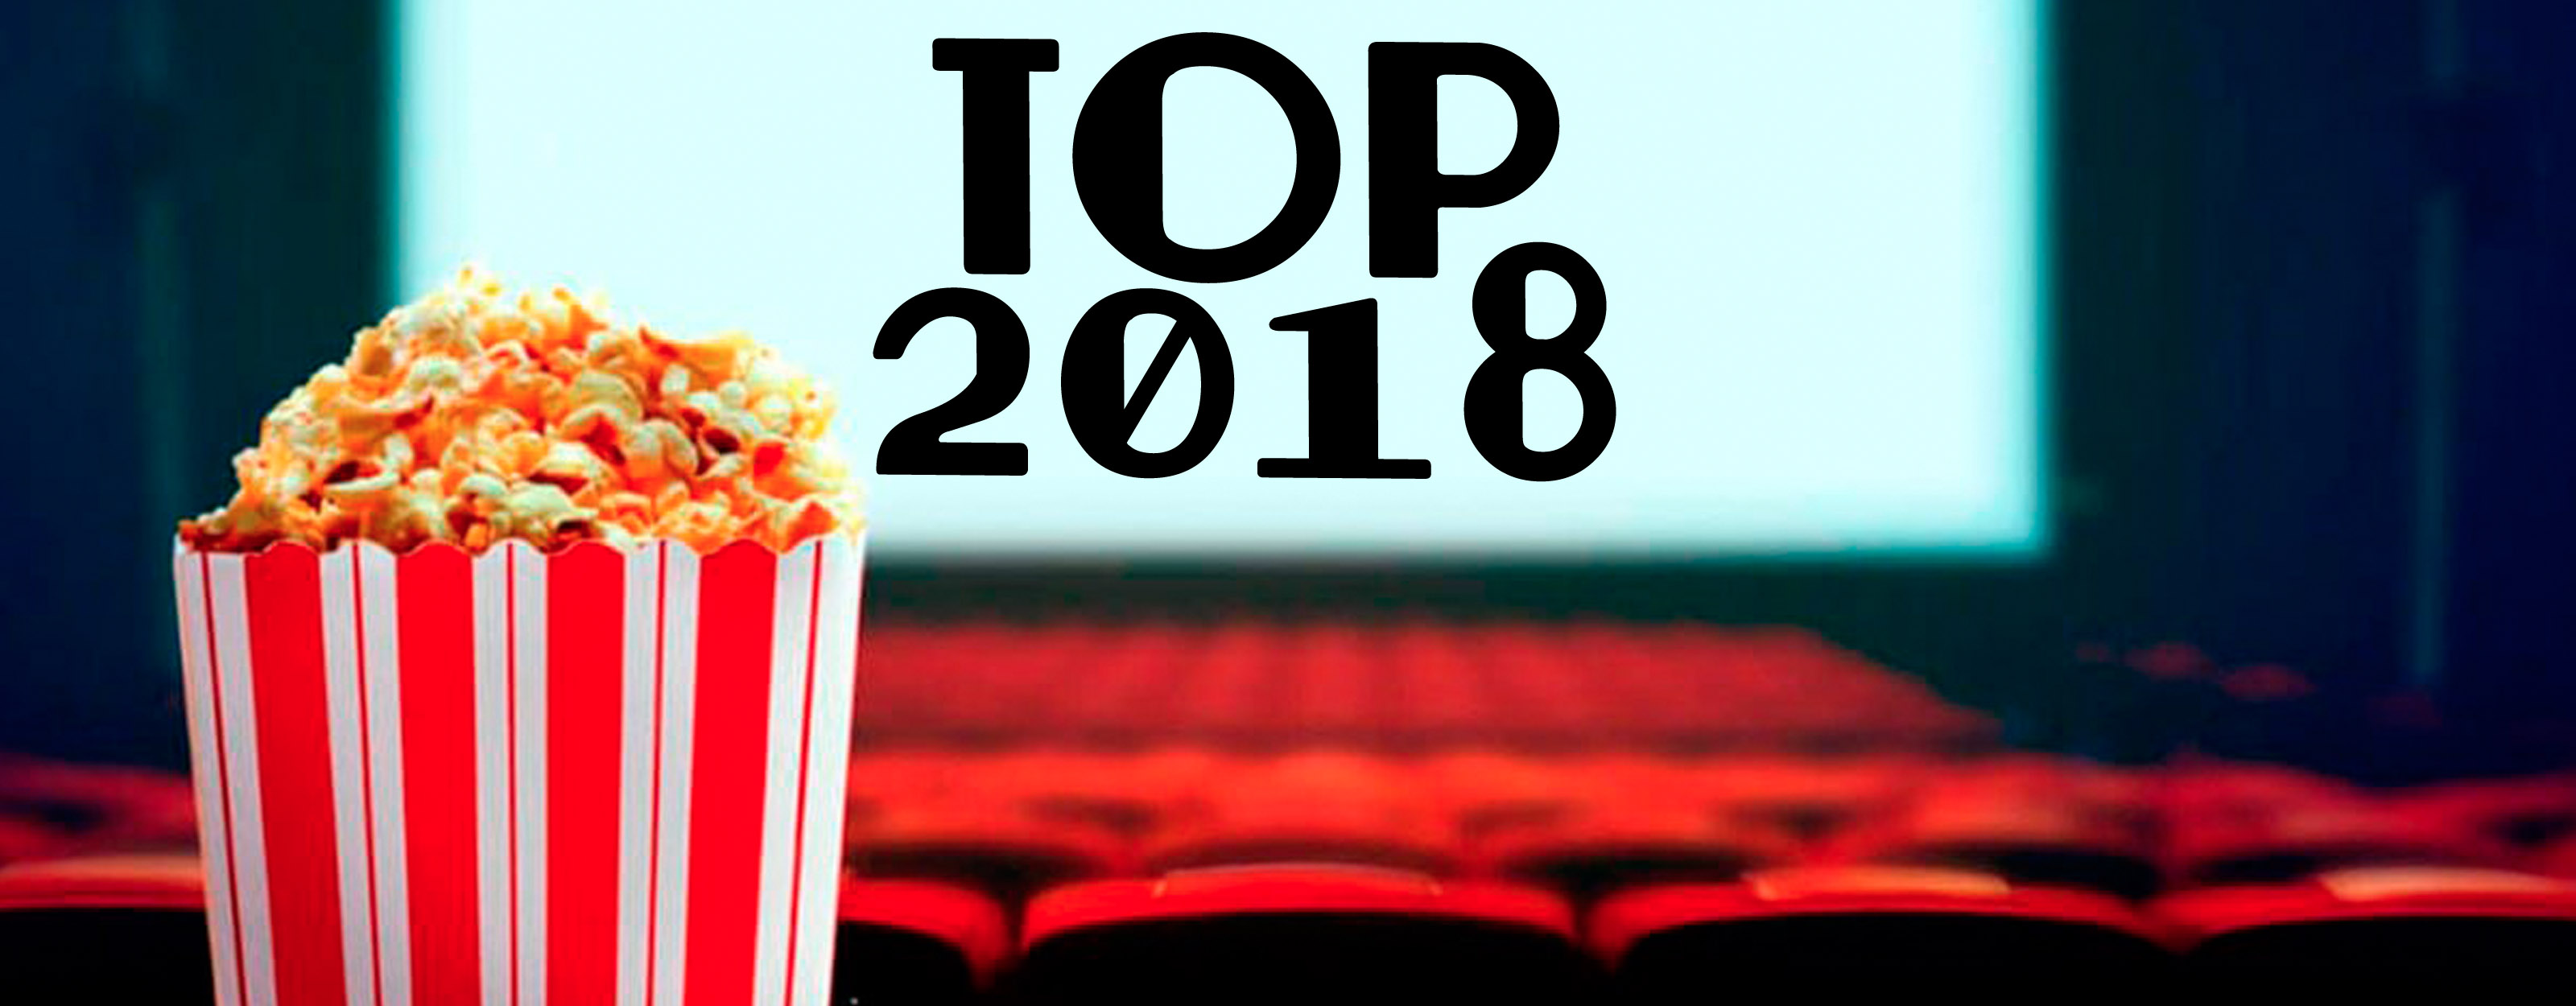 Mejores películas 2018, Top cine